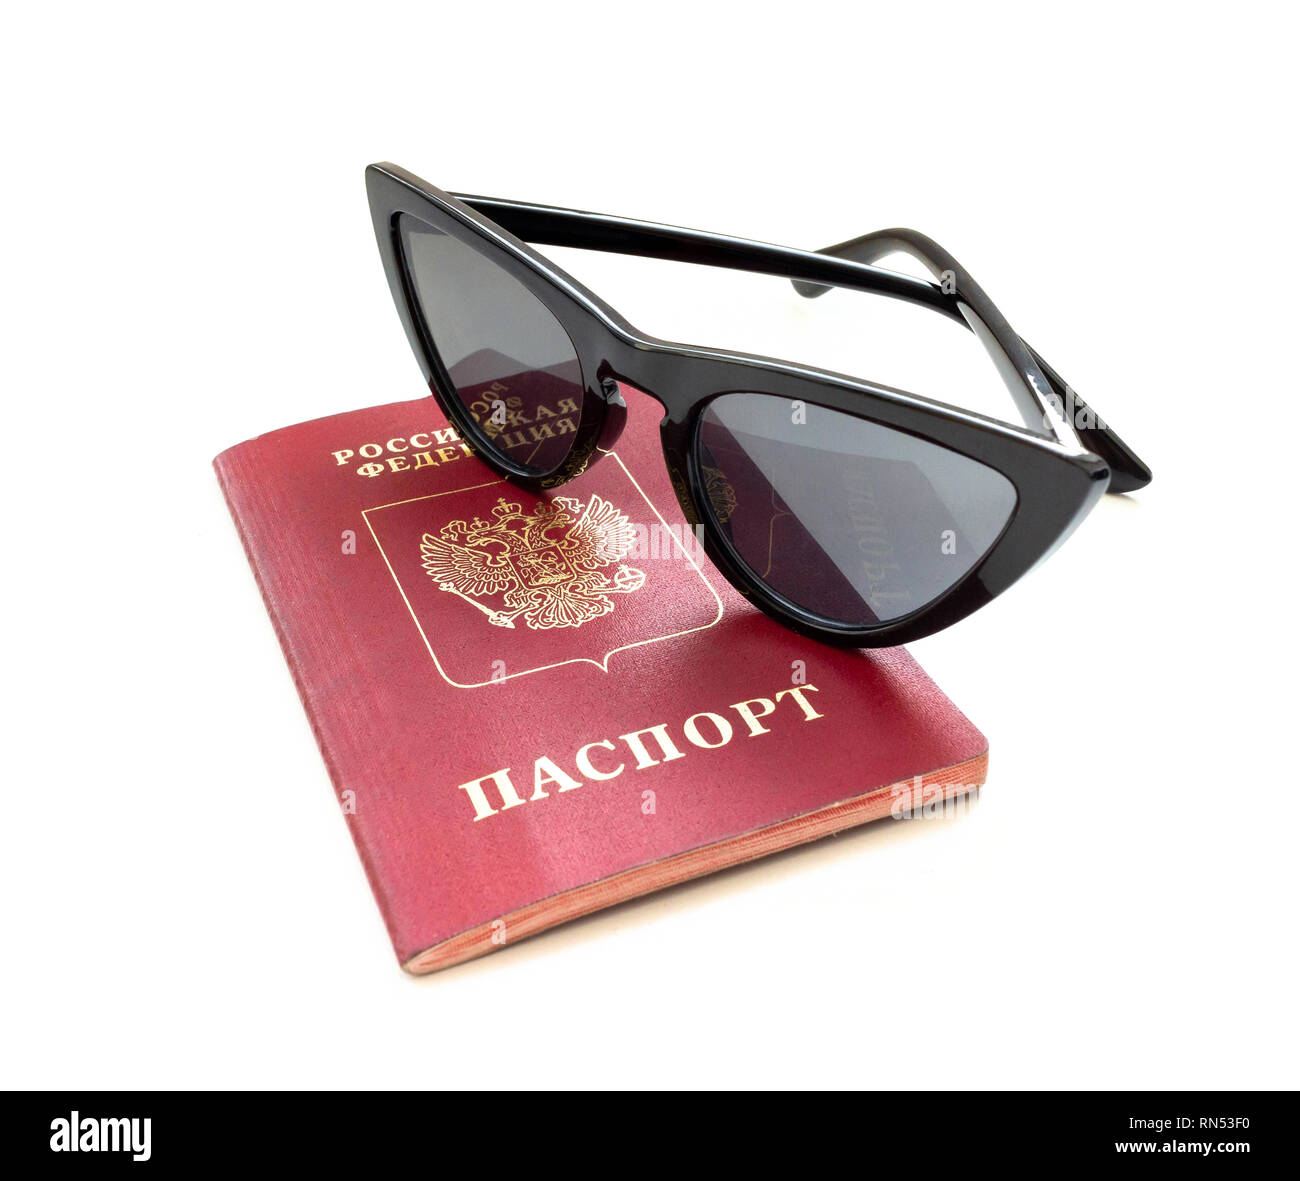 Passeport russe et lunettes isolé sur fond blanc. Photo en gros plan.  Concept de voyage Photo Stock - Alamy